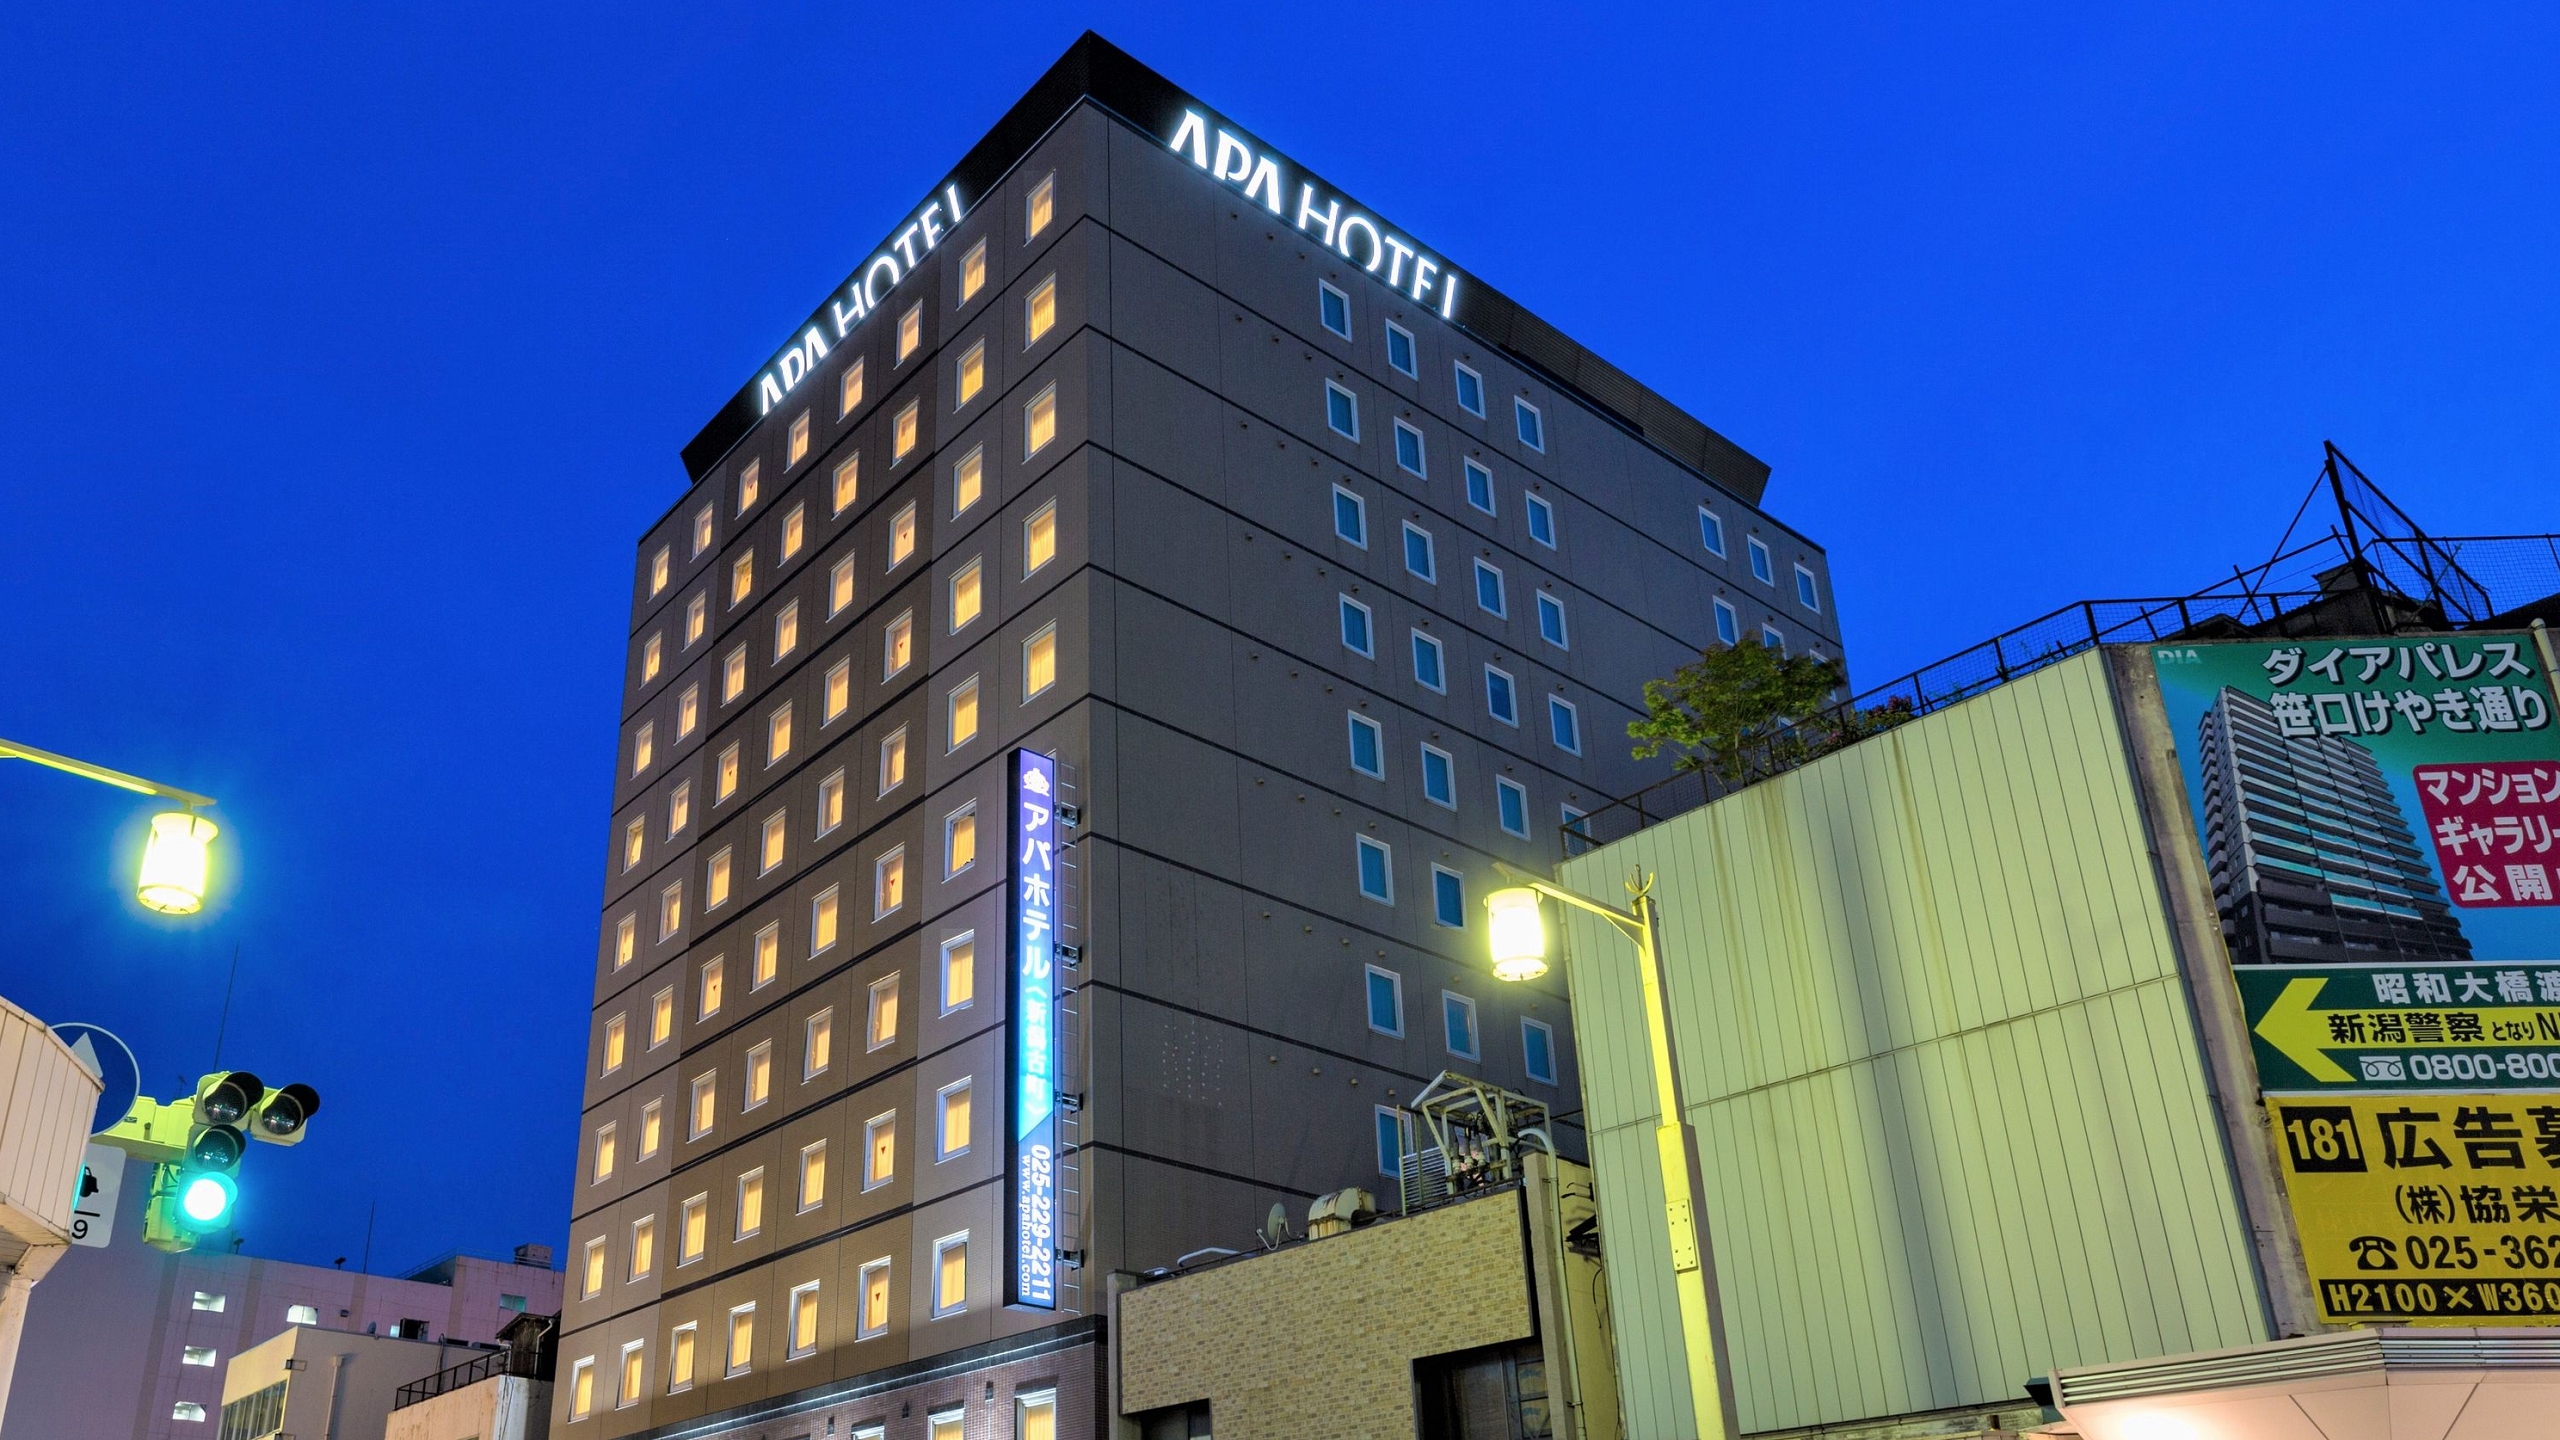 新潟古町 APA 飯店